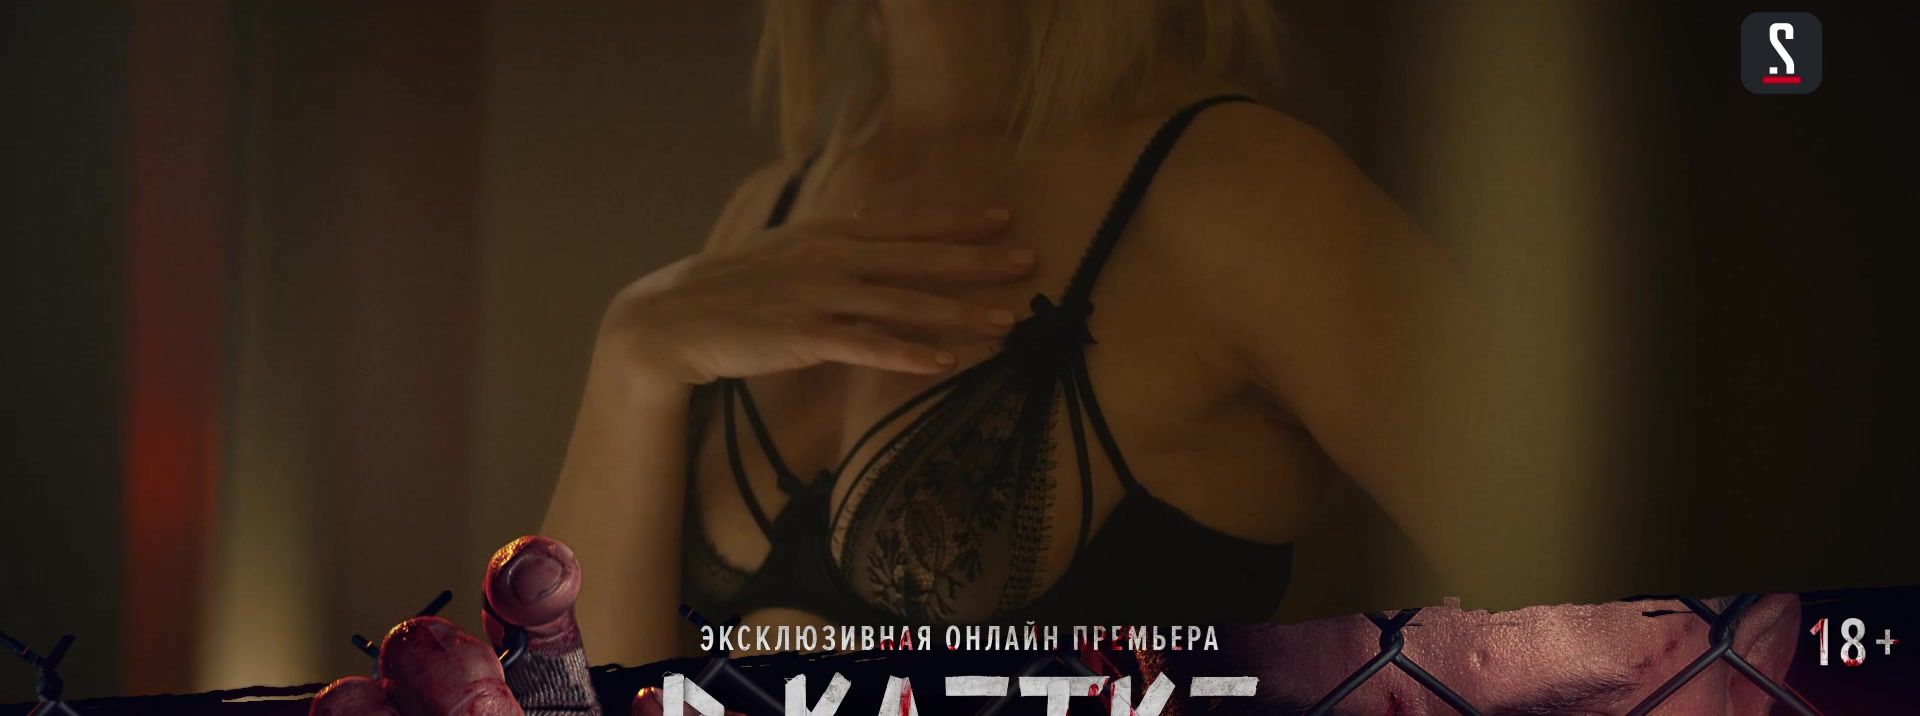 Amateursex Agata Muceniece, Ekaterina Malikova, Alena Mihailova nude - V kletke s01e07 (2019) FreeLifetime3DAni...